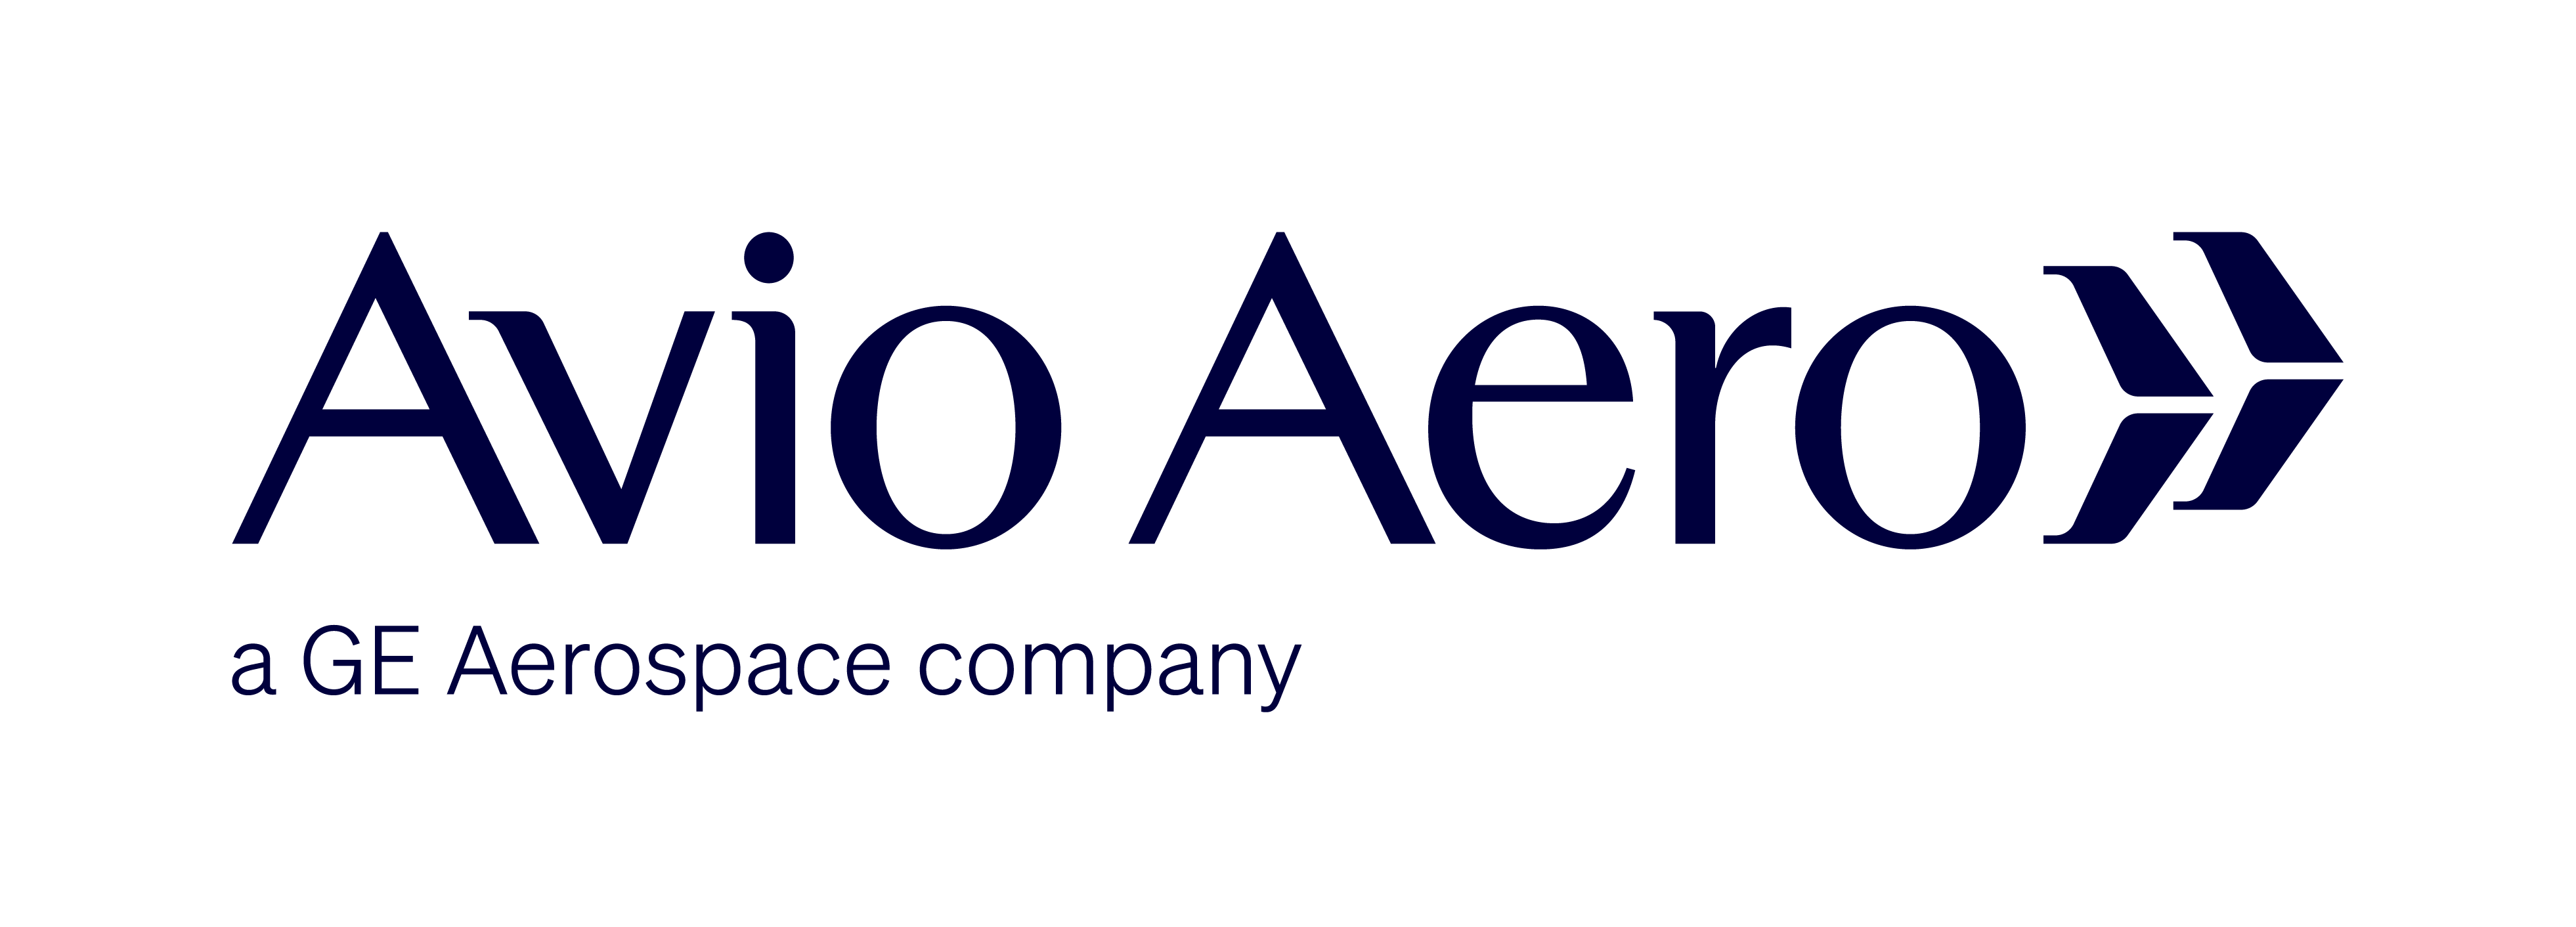 GE Avio Aero Logo - 1